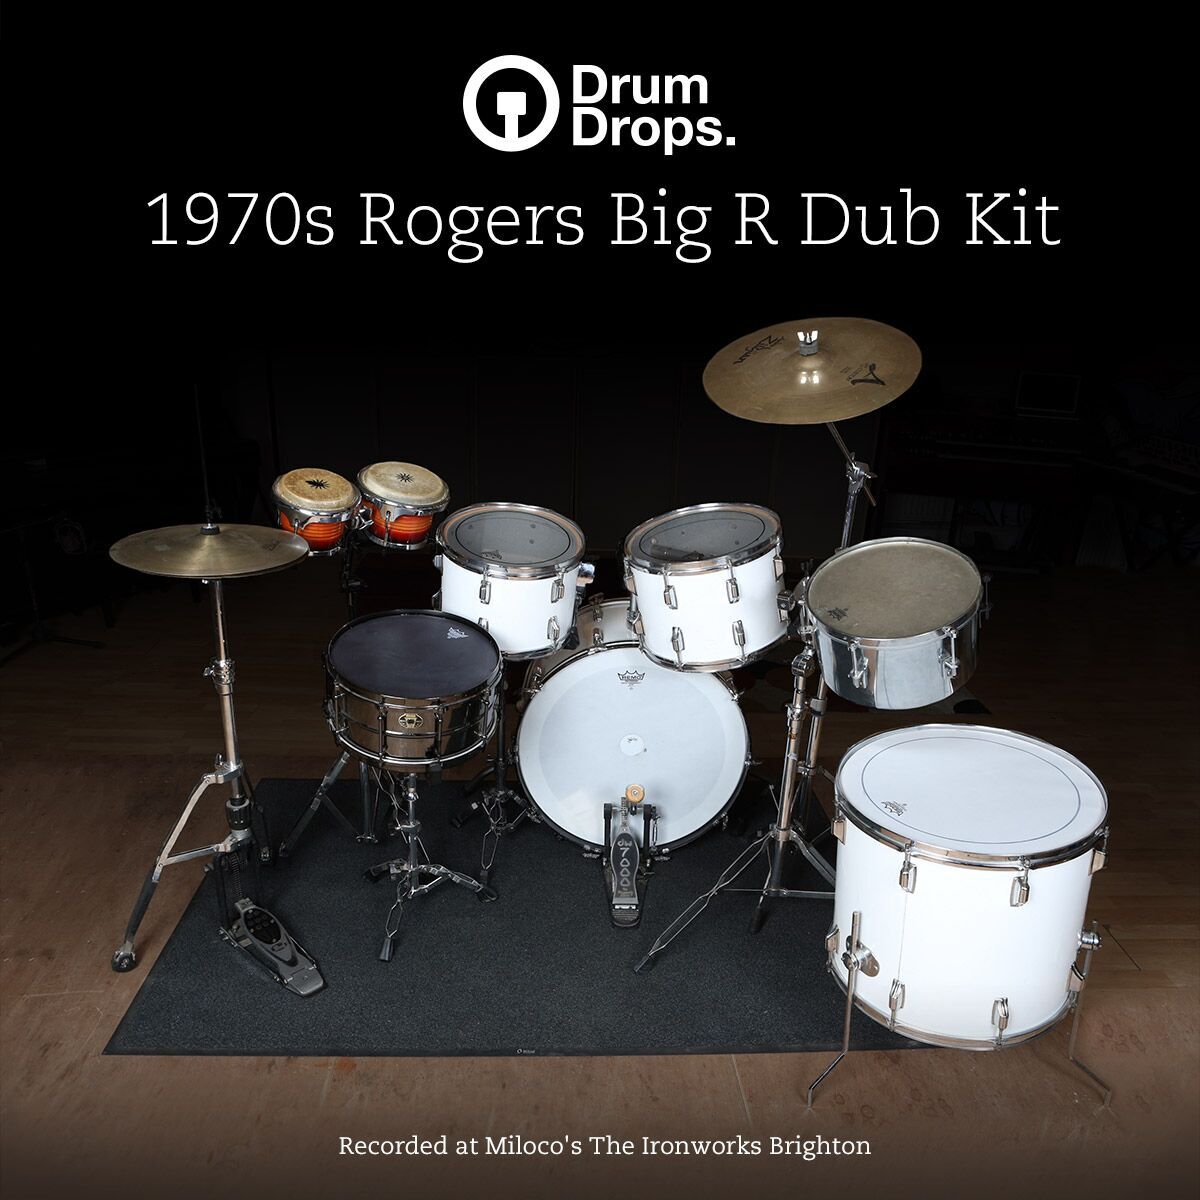 free reggae drum kit garageband download